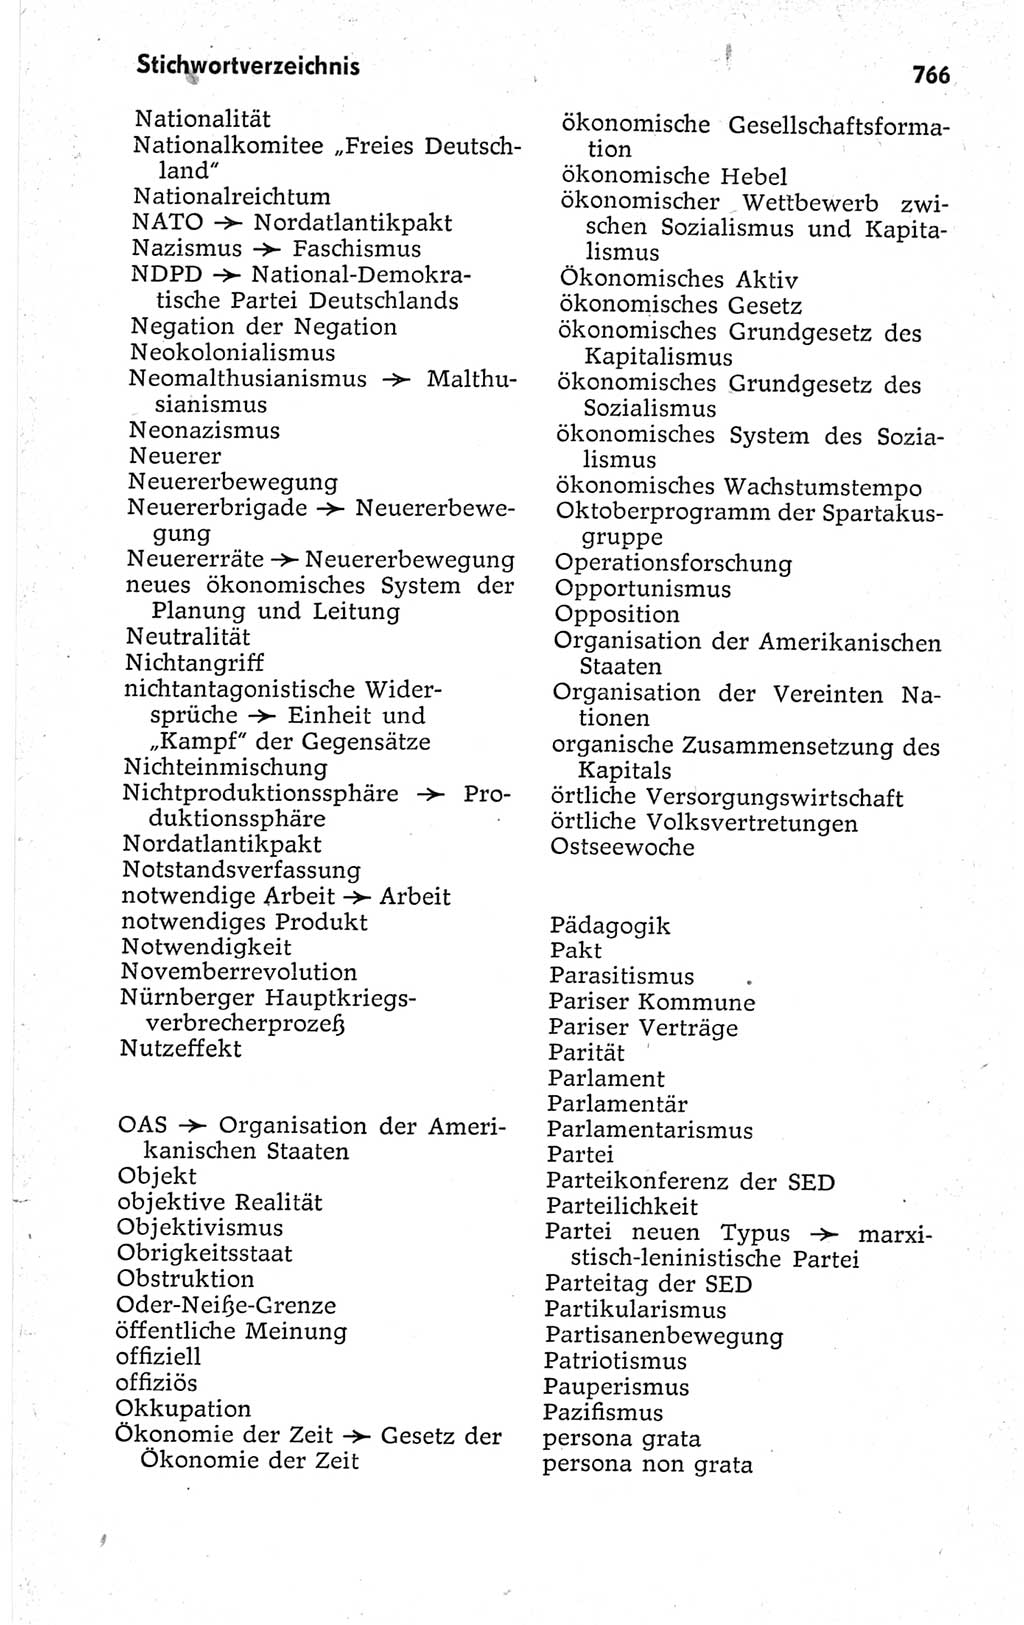 Kleines politisches Wörterbuch [Deutsche Demokratische Republik (DDR)] 1967, Seite 766 (Kl. pol. Wb. DDR 1967, S. 766)